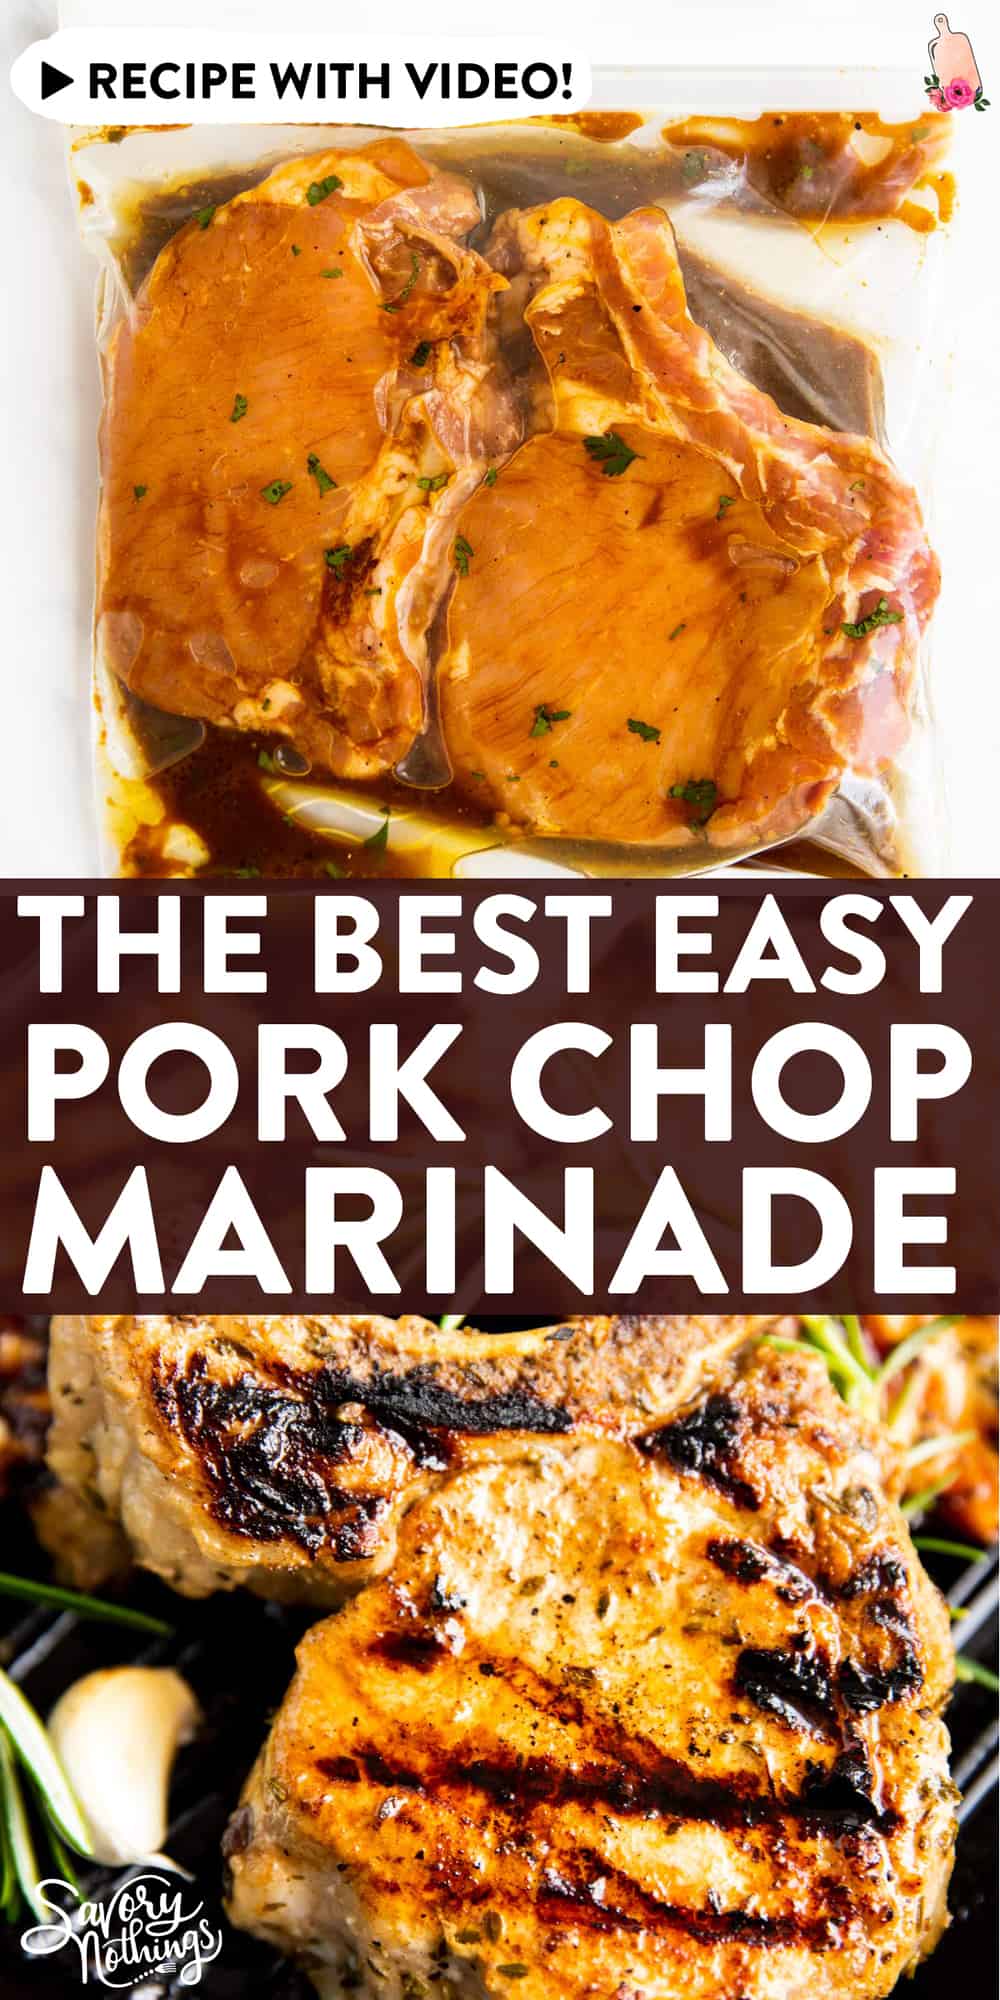 The Best Pork Chop Marinade | Savory Nothings